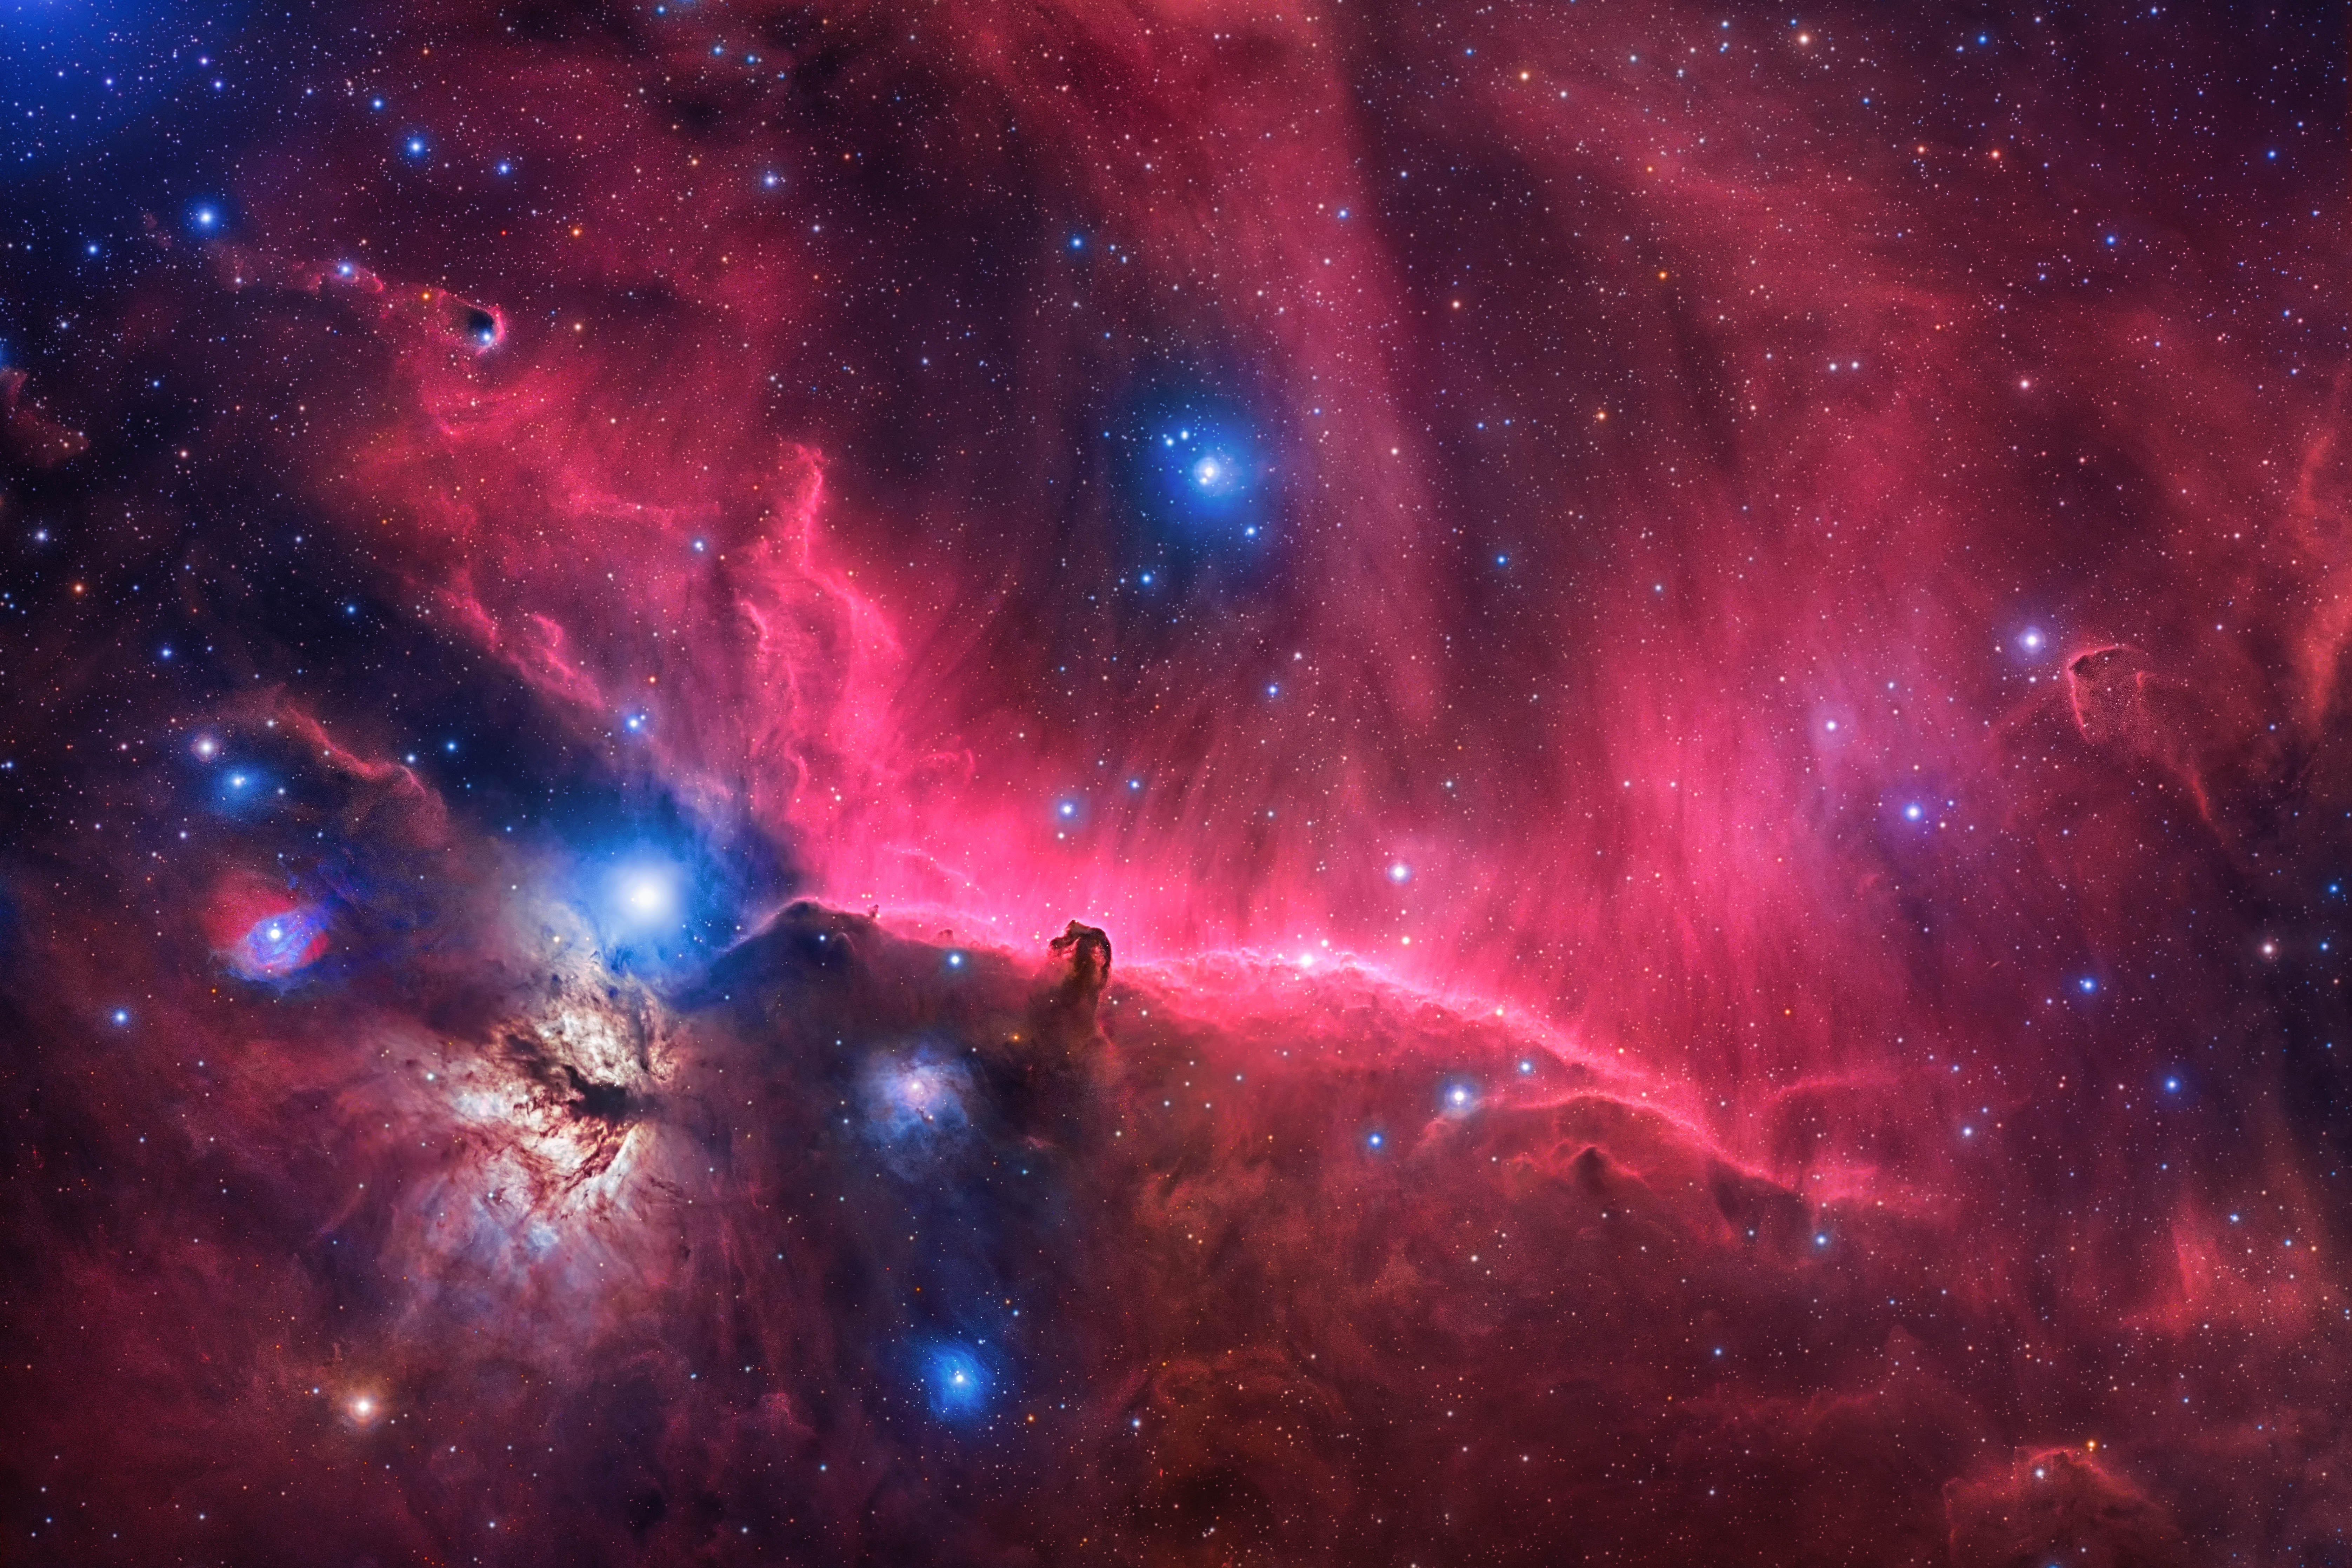 B33 & IC434_Horsehead Nebula-4mb.jpg